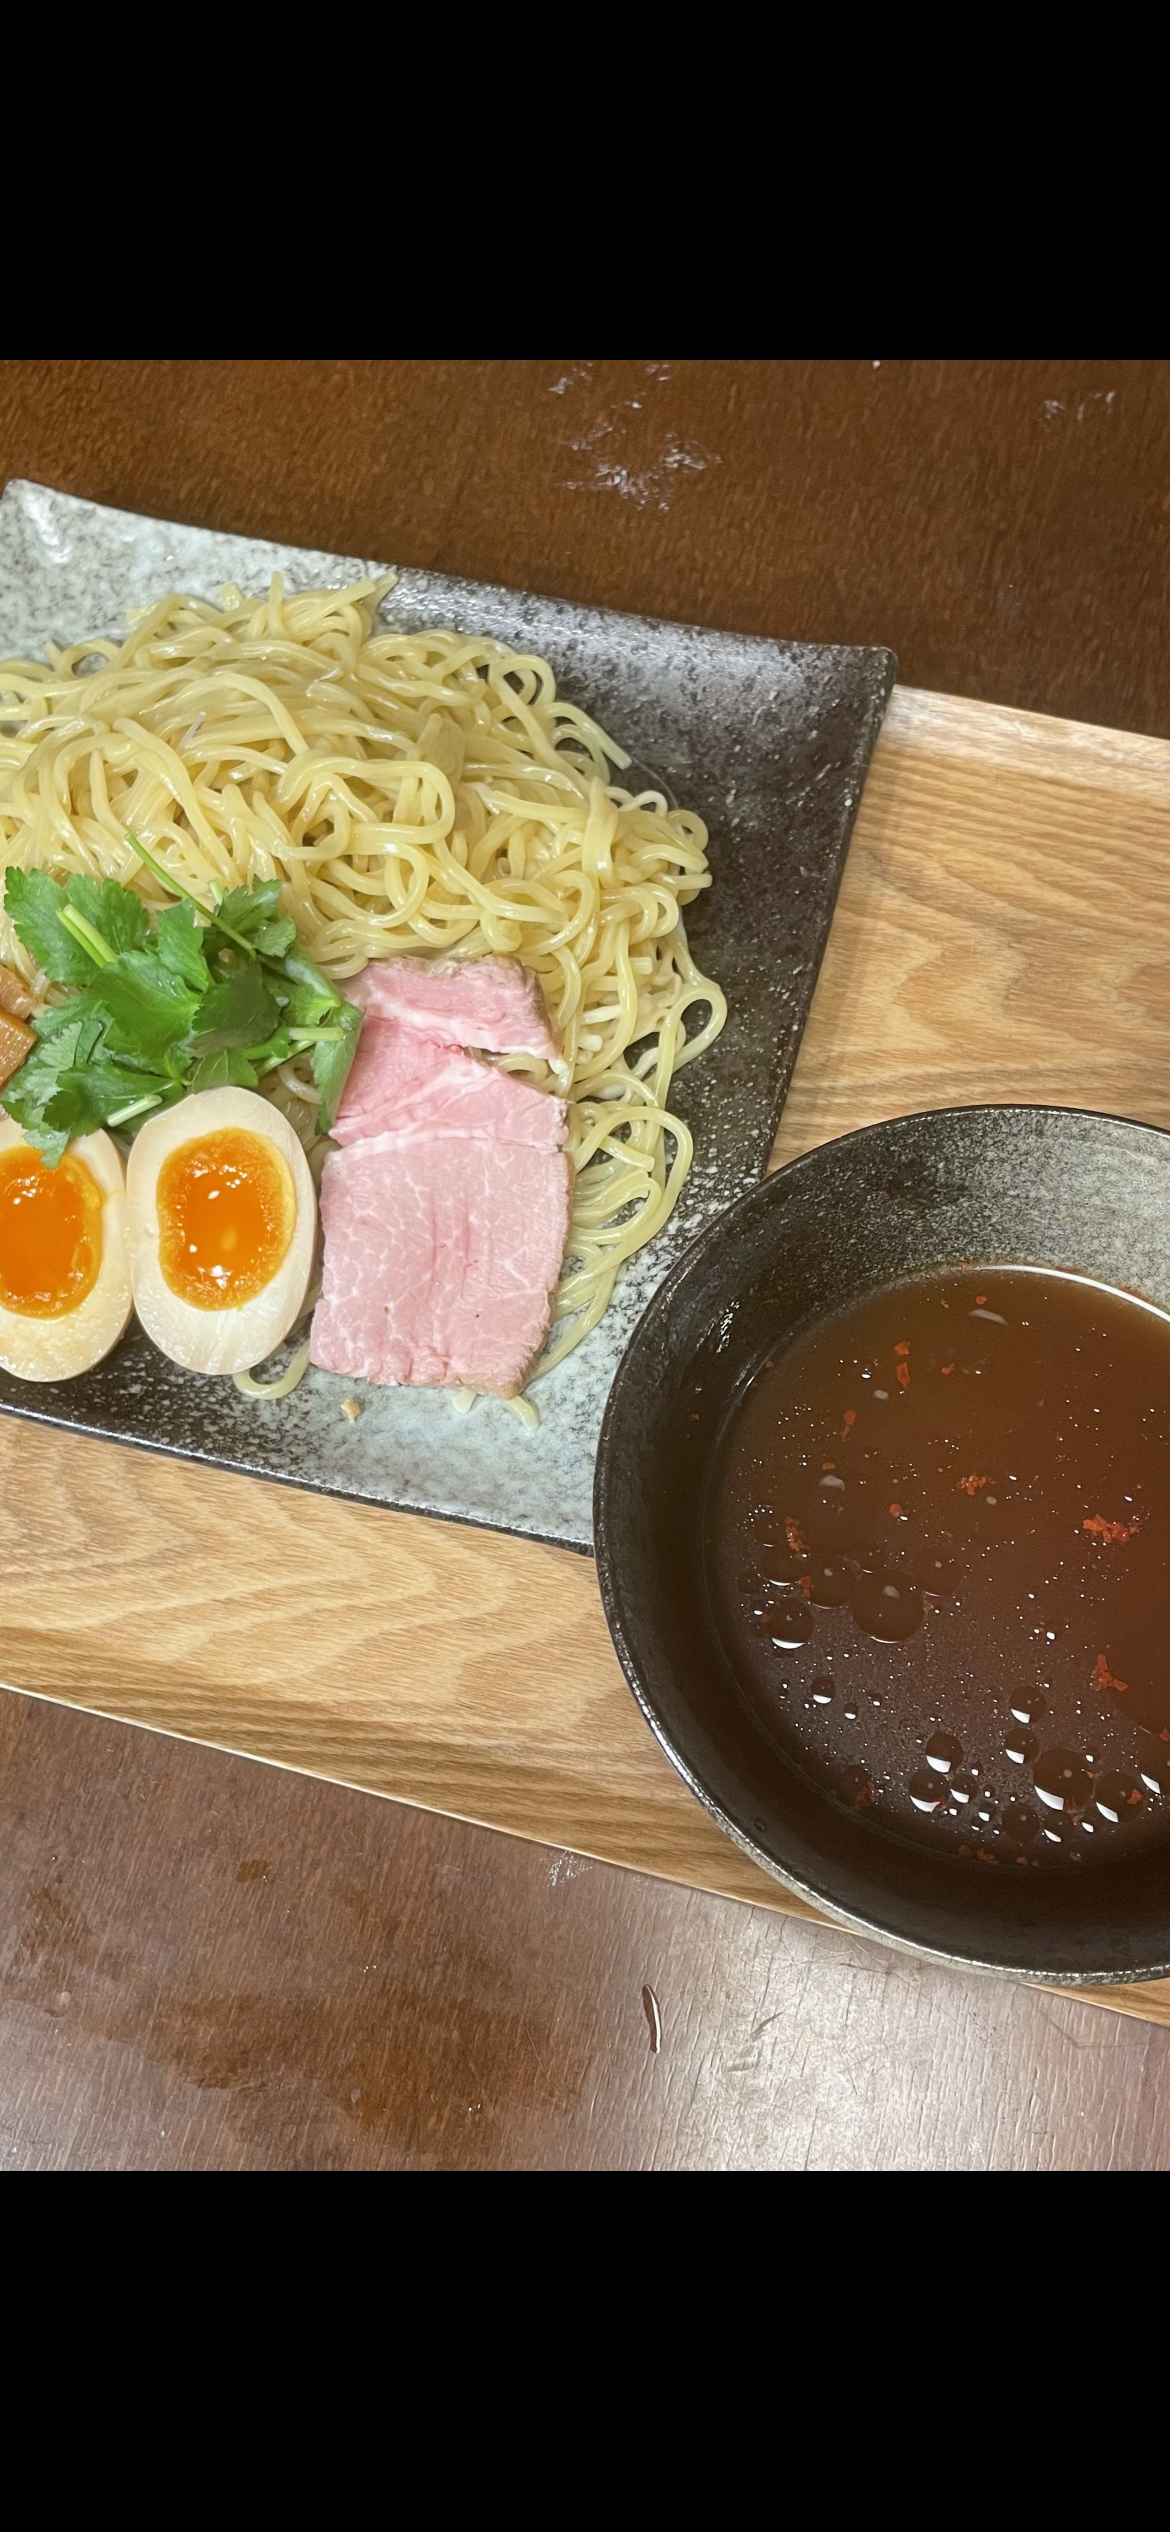 つけ麺(魚介スープ焼き豚入り)750円